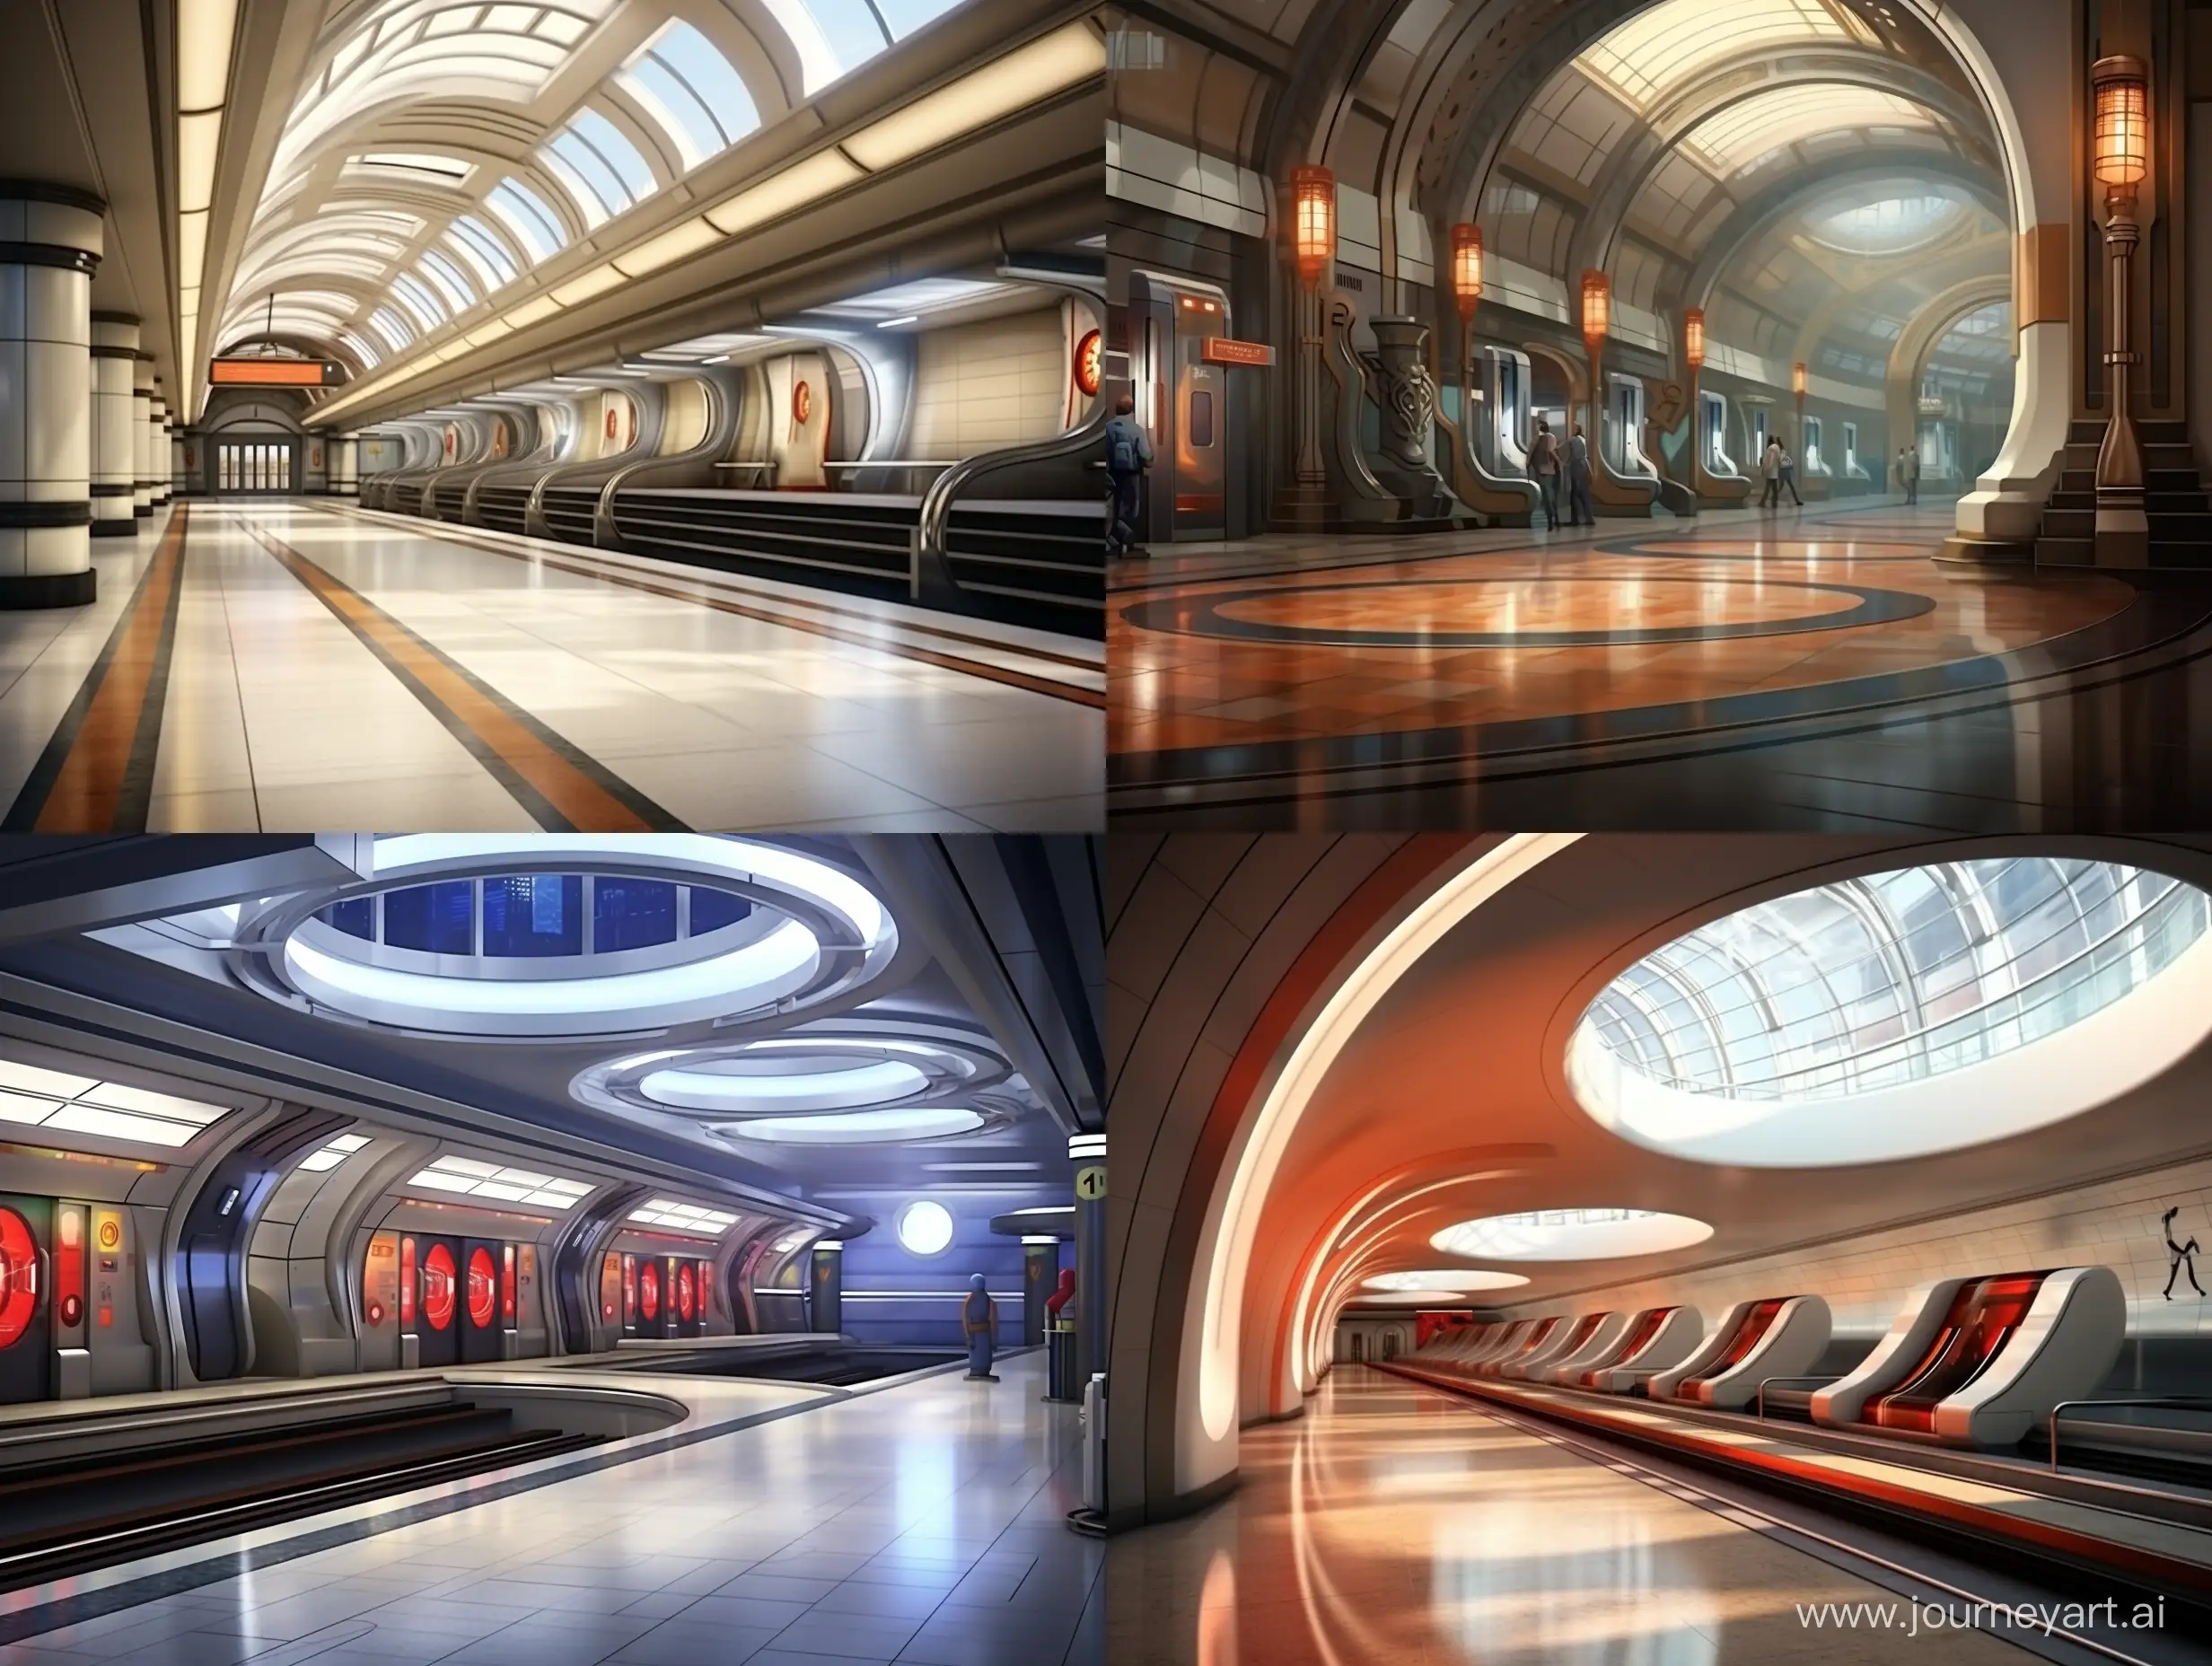 Современная подземная станция метро, тонкие колонны в центре зала, поезд прибывает на перрон., люди ждут поезд, фотореализм